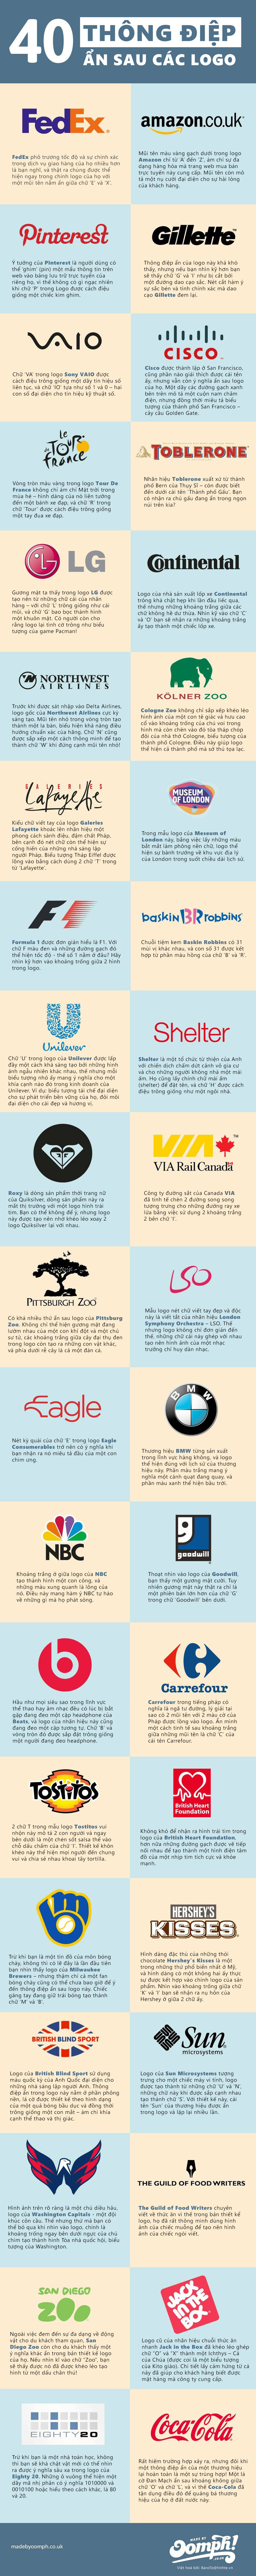 [Infographic] 40 logo ẩn chứa thông điệp doanh nghiệp 1